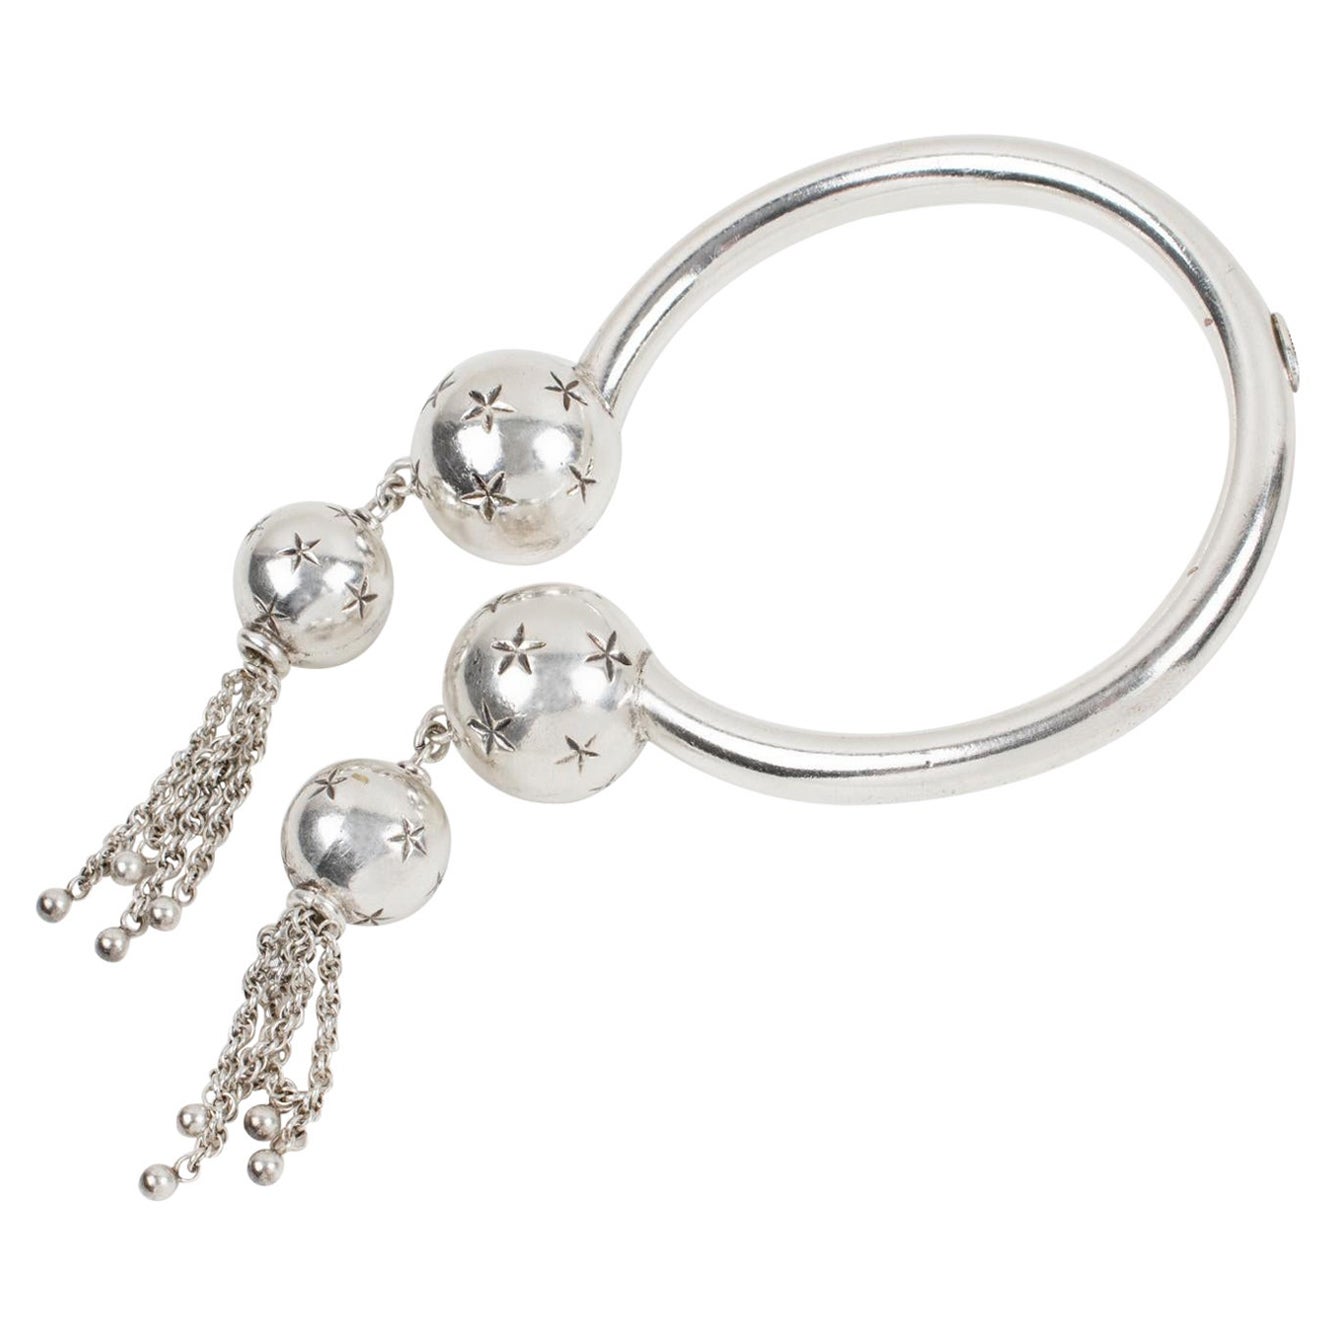 Emmanuelle Khanh Paris Silver Plate Cuff Bracelet with Dangle Charms